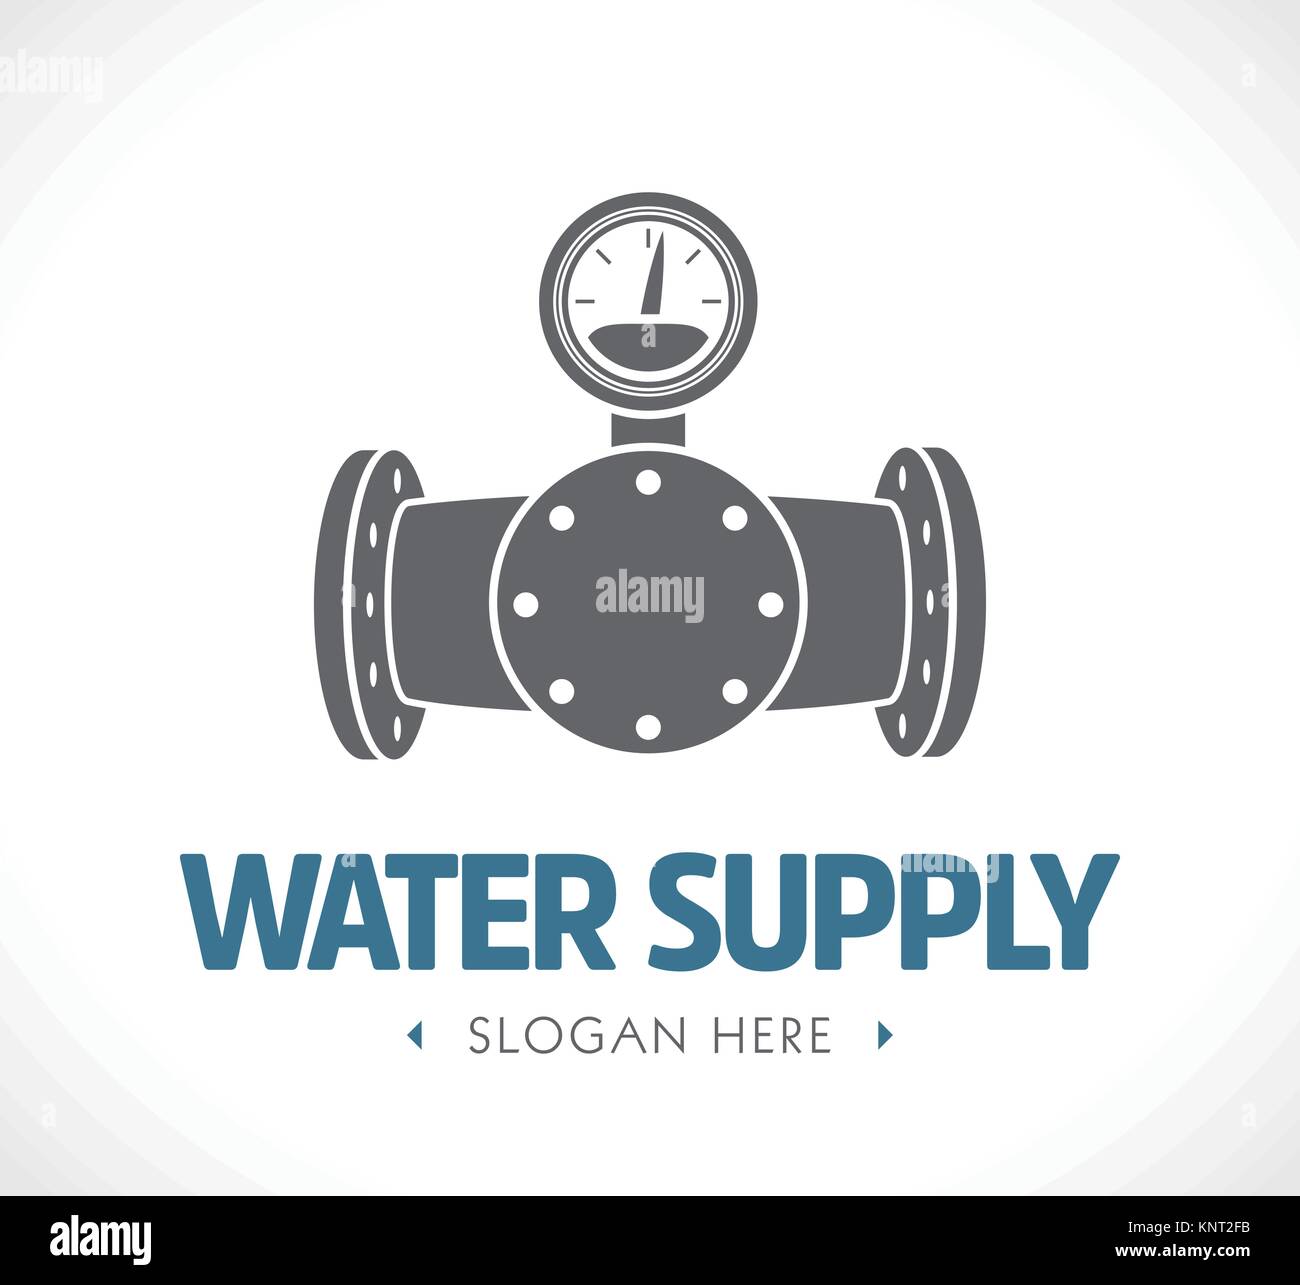 Approvvigionamento di acqua e sistema di scarico delle acque reflue - concetto logo - illustrazione di stock Illustrazione Vettoriale